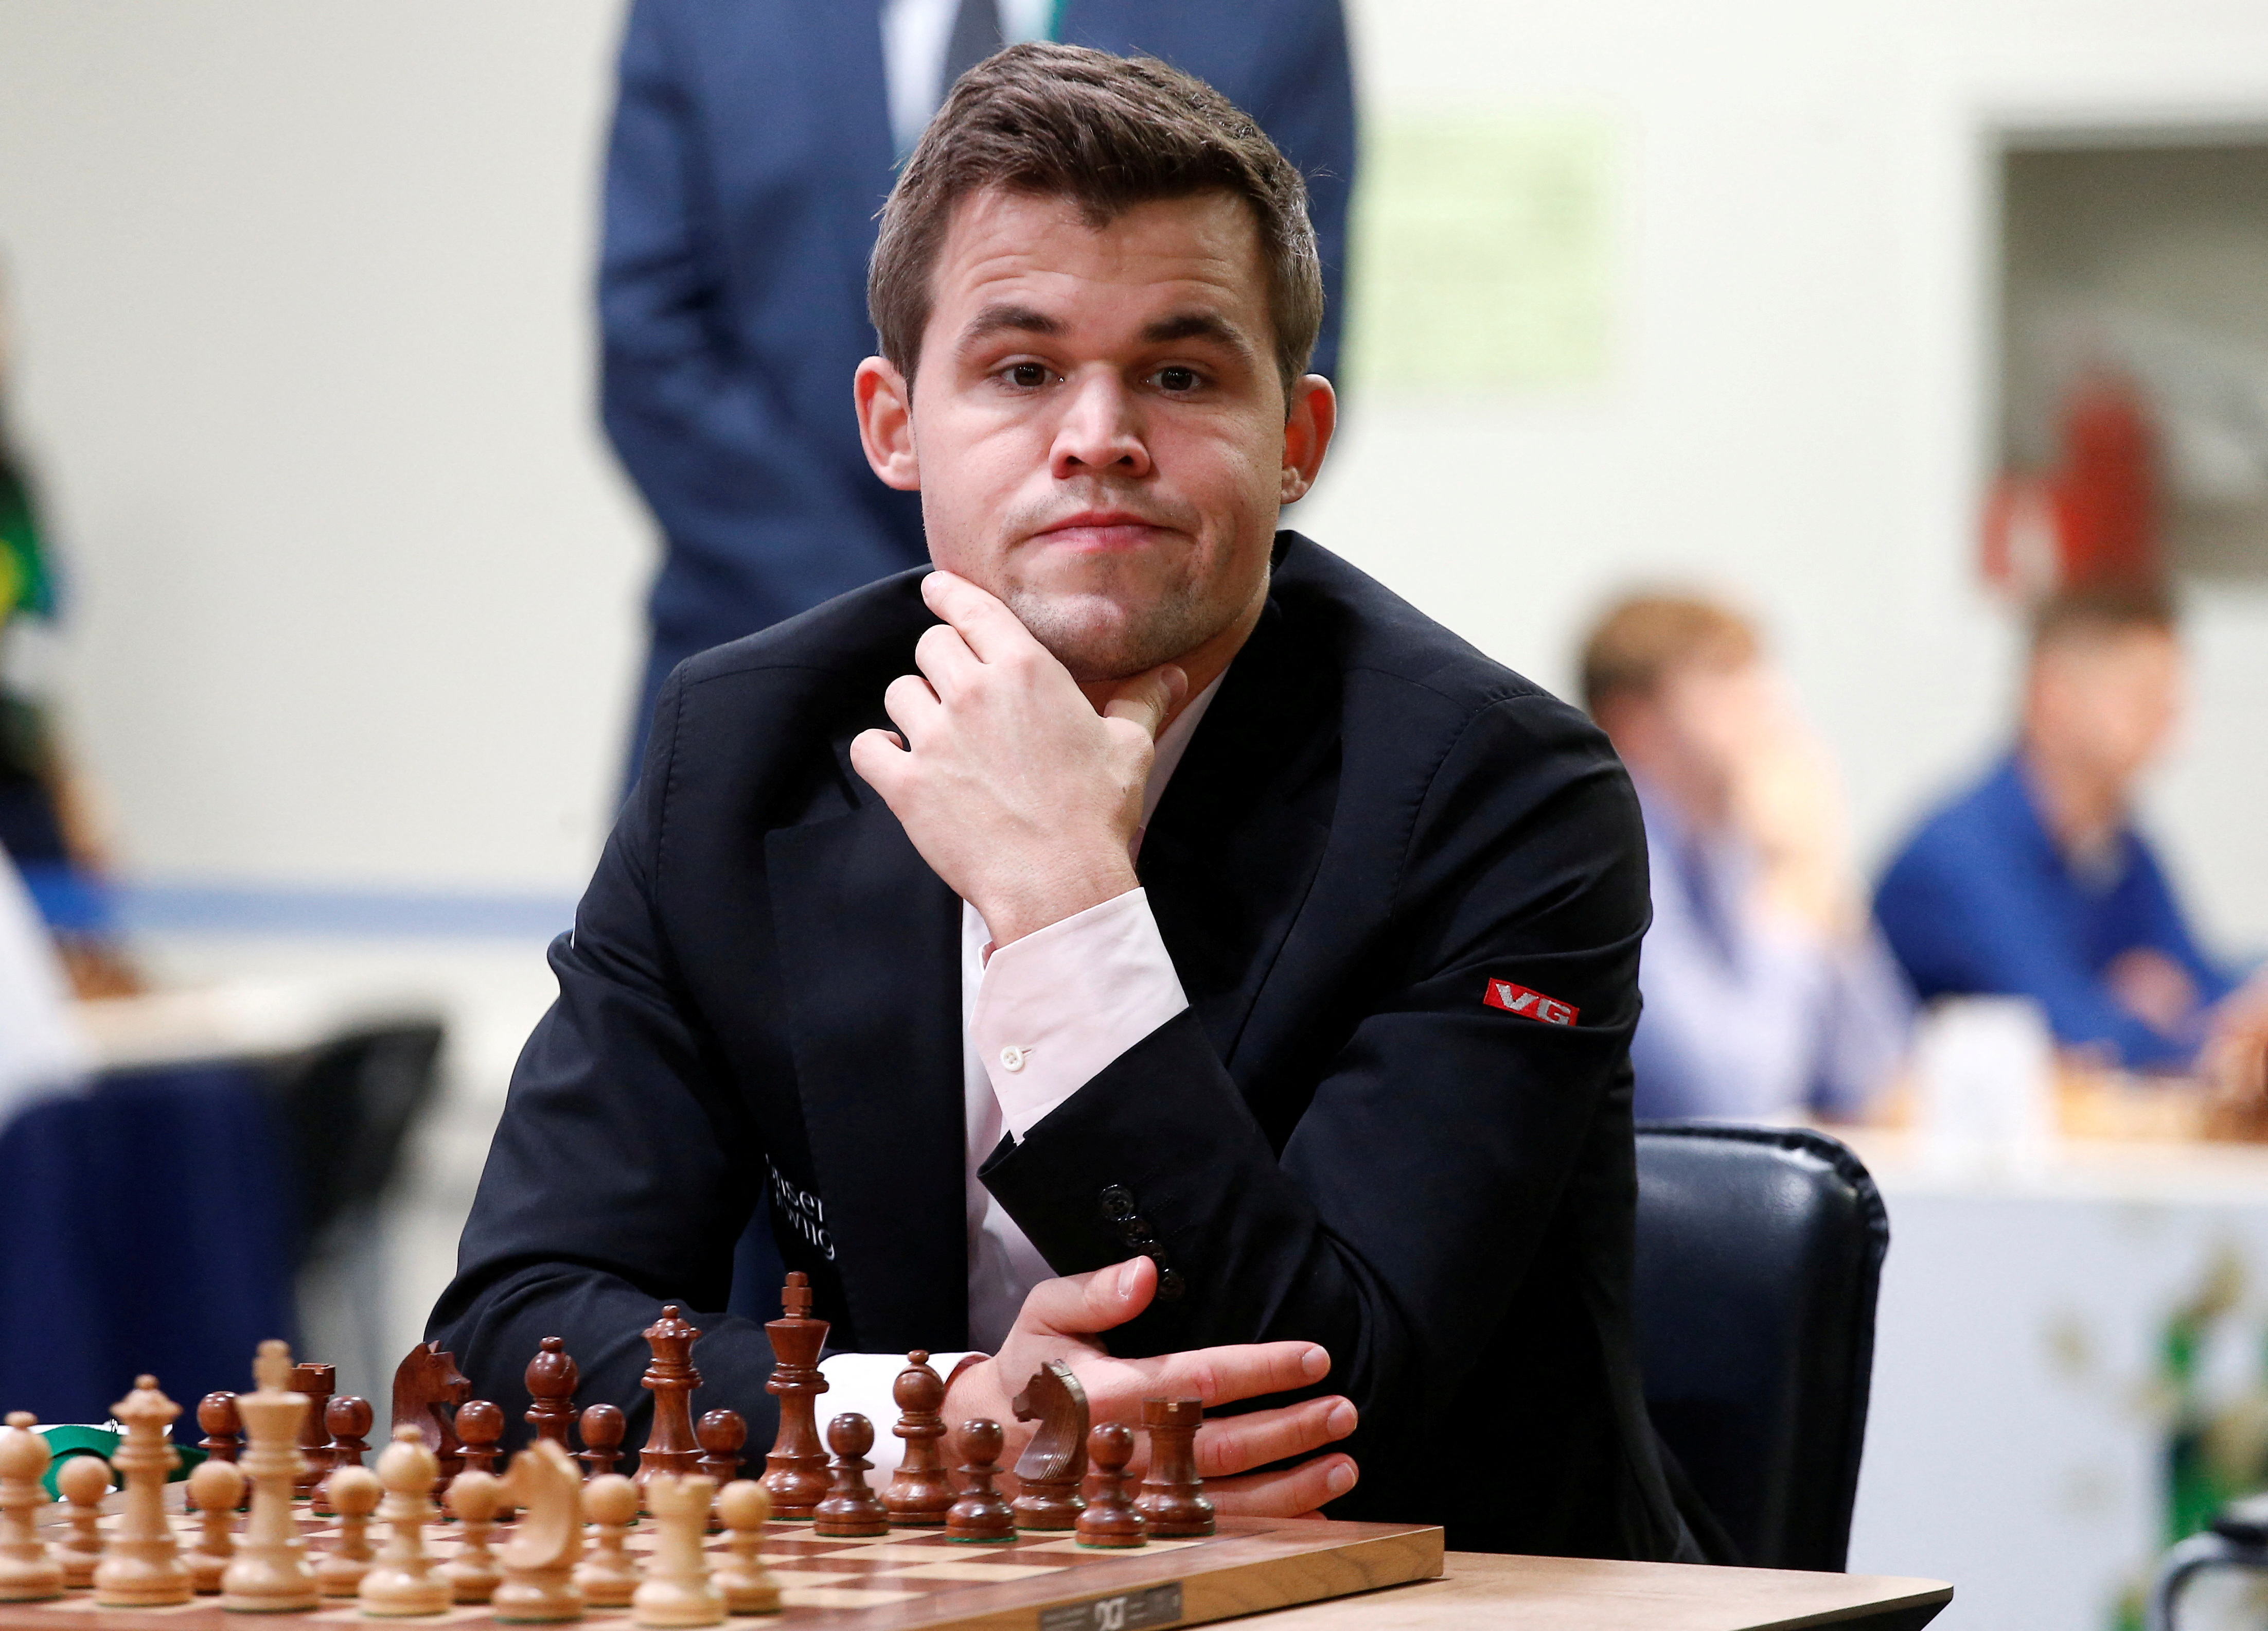 Magnus Carlsen decidió abandonar una partida luego de perder -según su propio criterio de manera extraña- frente a un rival de menor fuerza, un joven norteamericano de 19 años, Hans Moke Niemann, N°41 del ranking internacional.